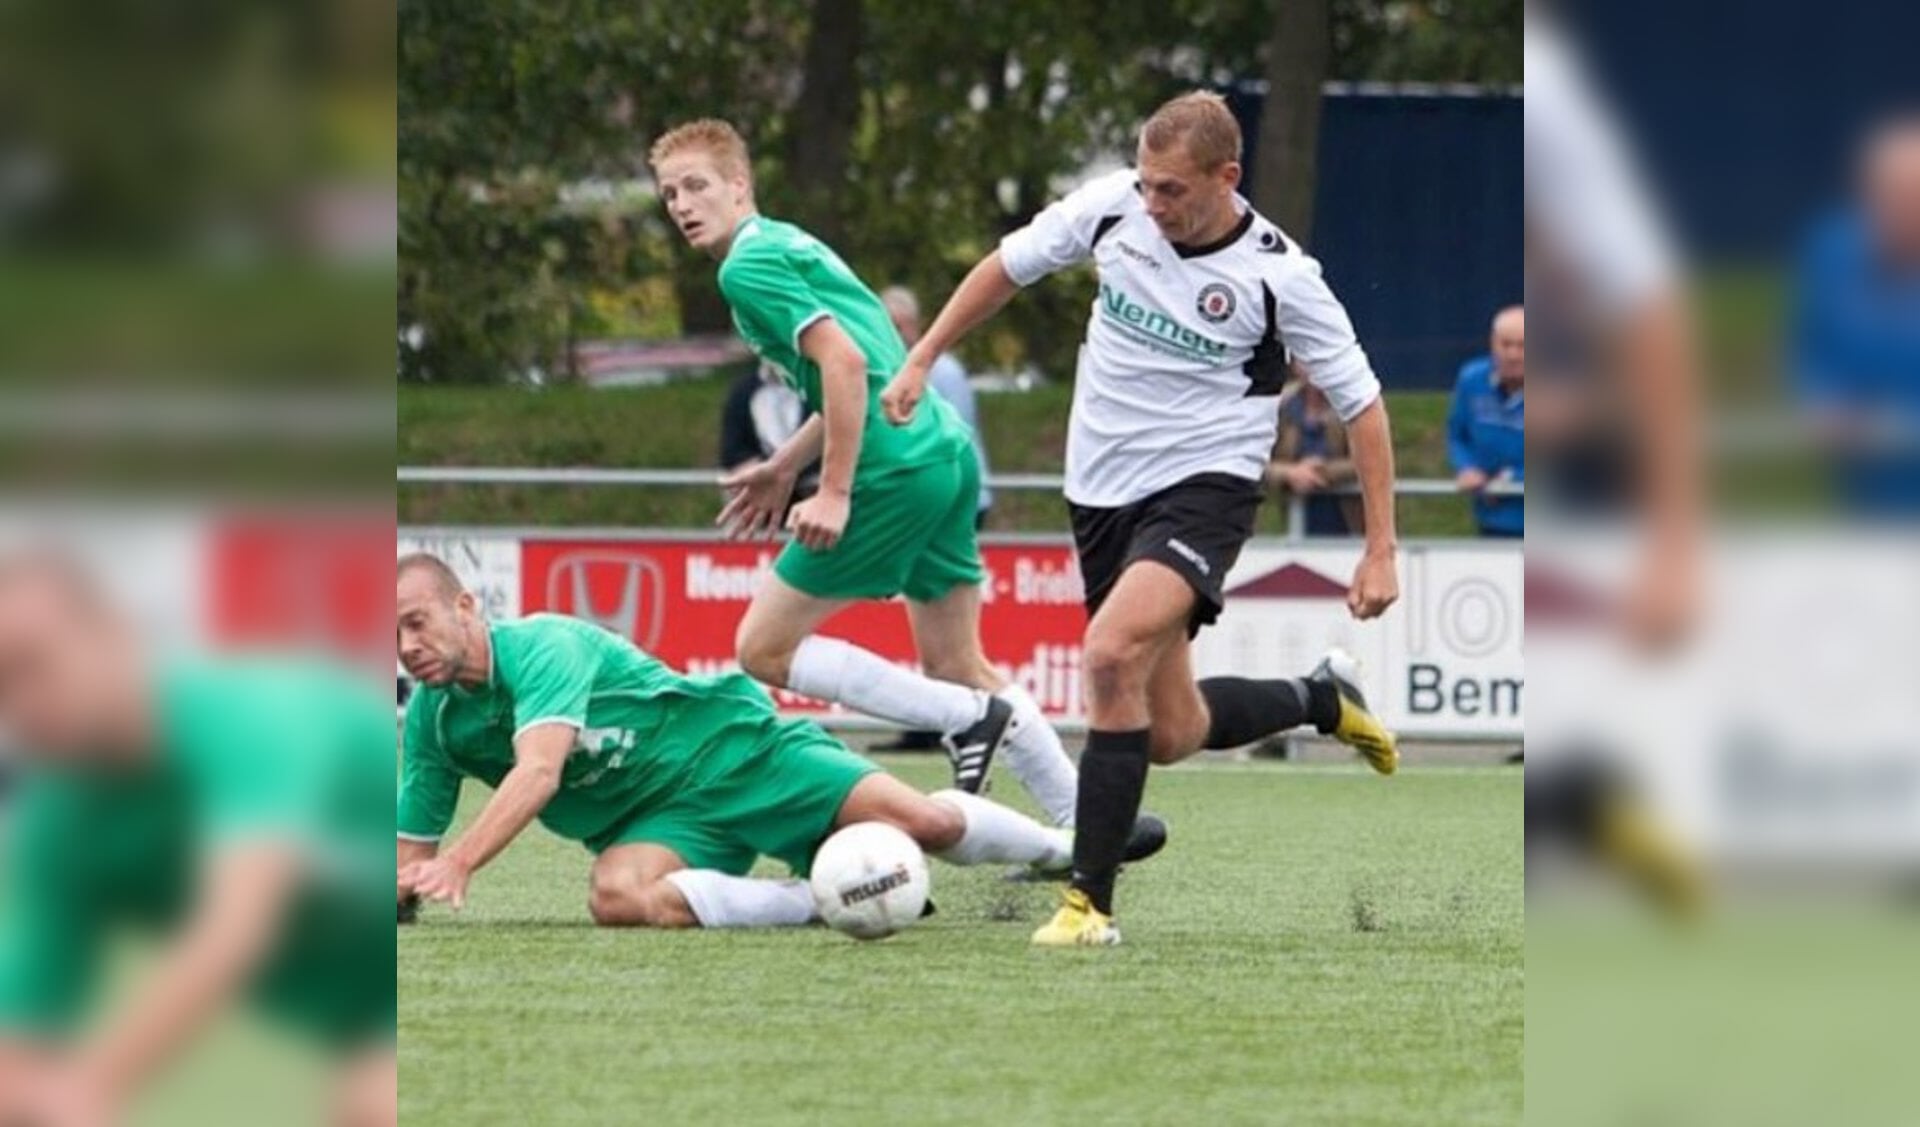 Goal en assist Hubregtse voor medekoploper Nieuwenhoorn (update)